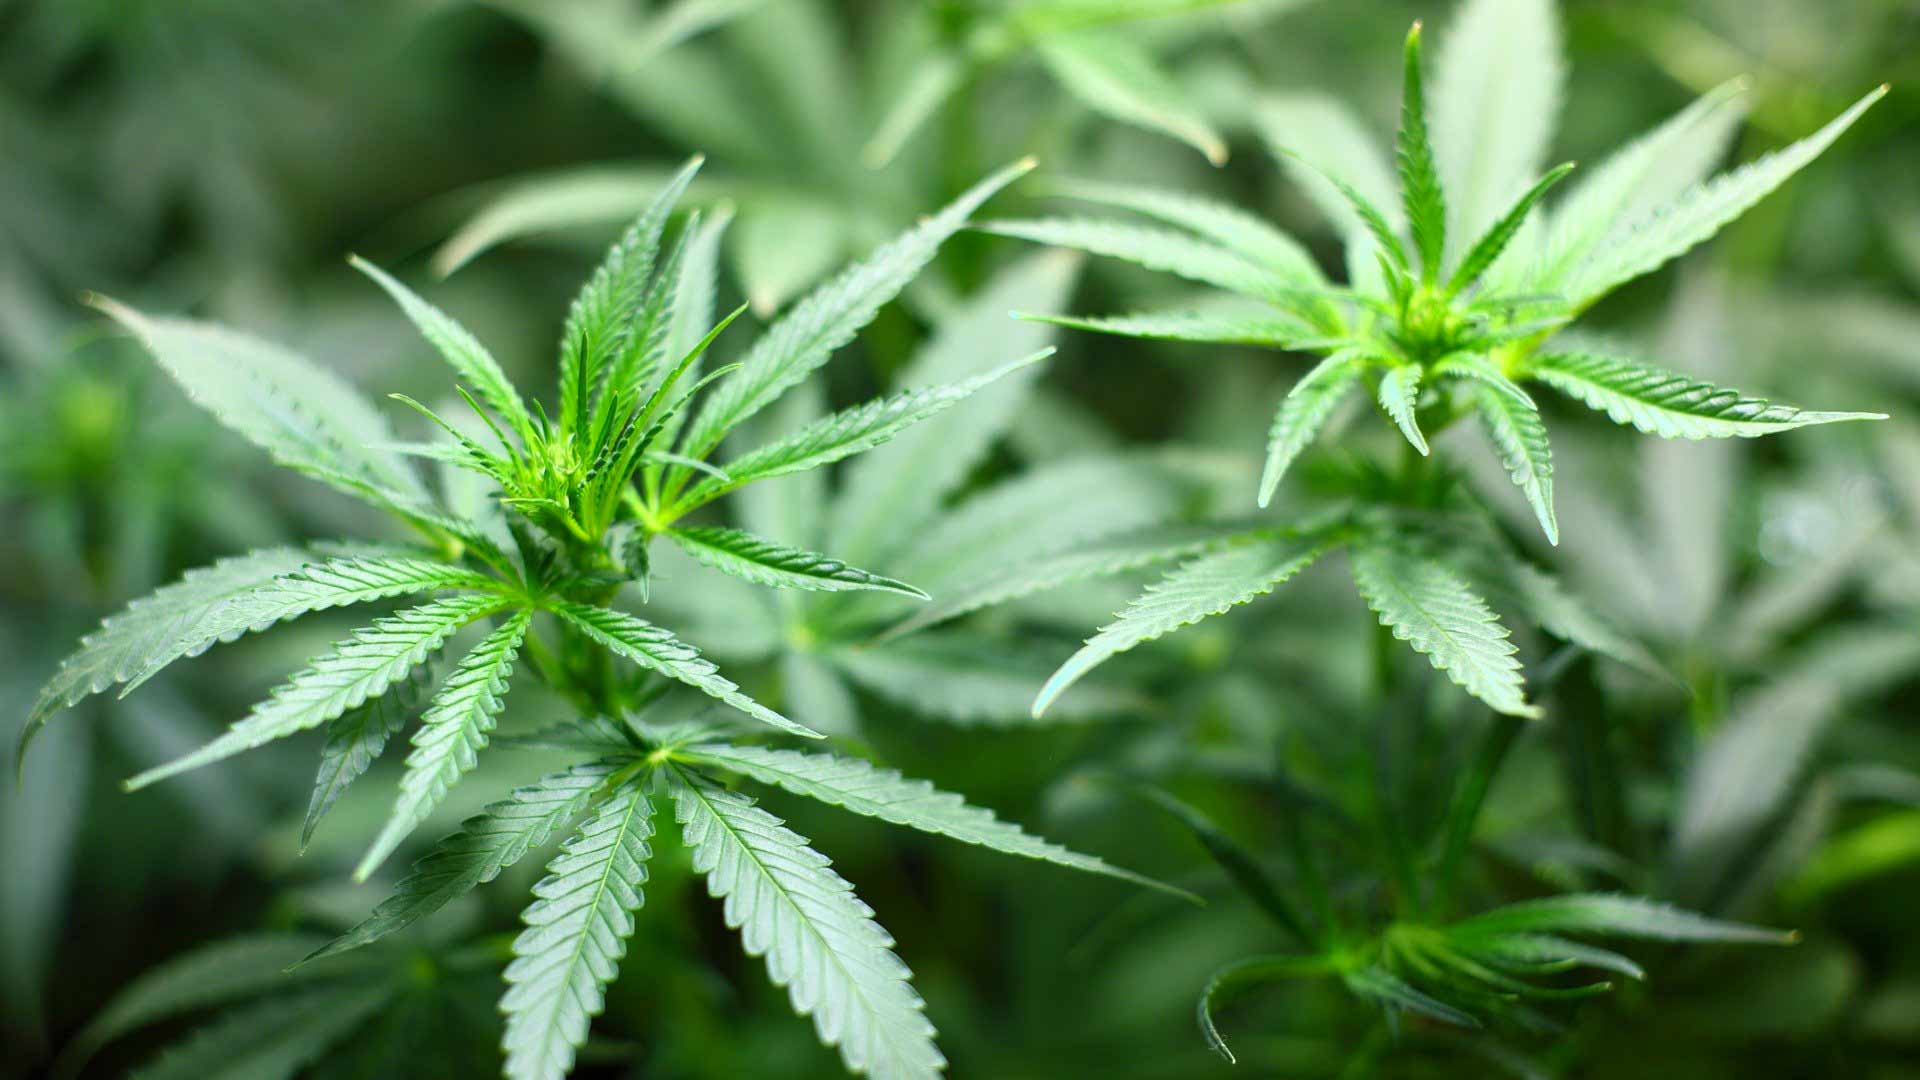 Telti: sequestrati 820 kg di marijuana